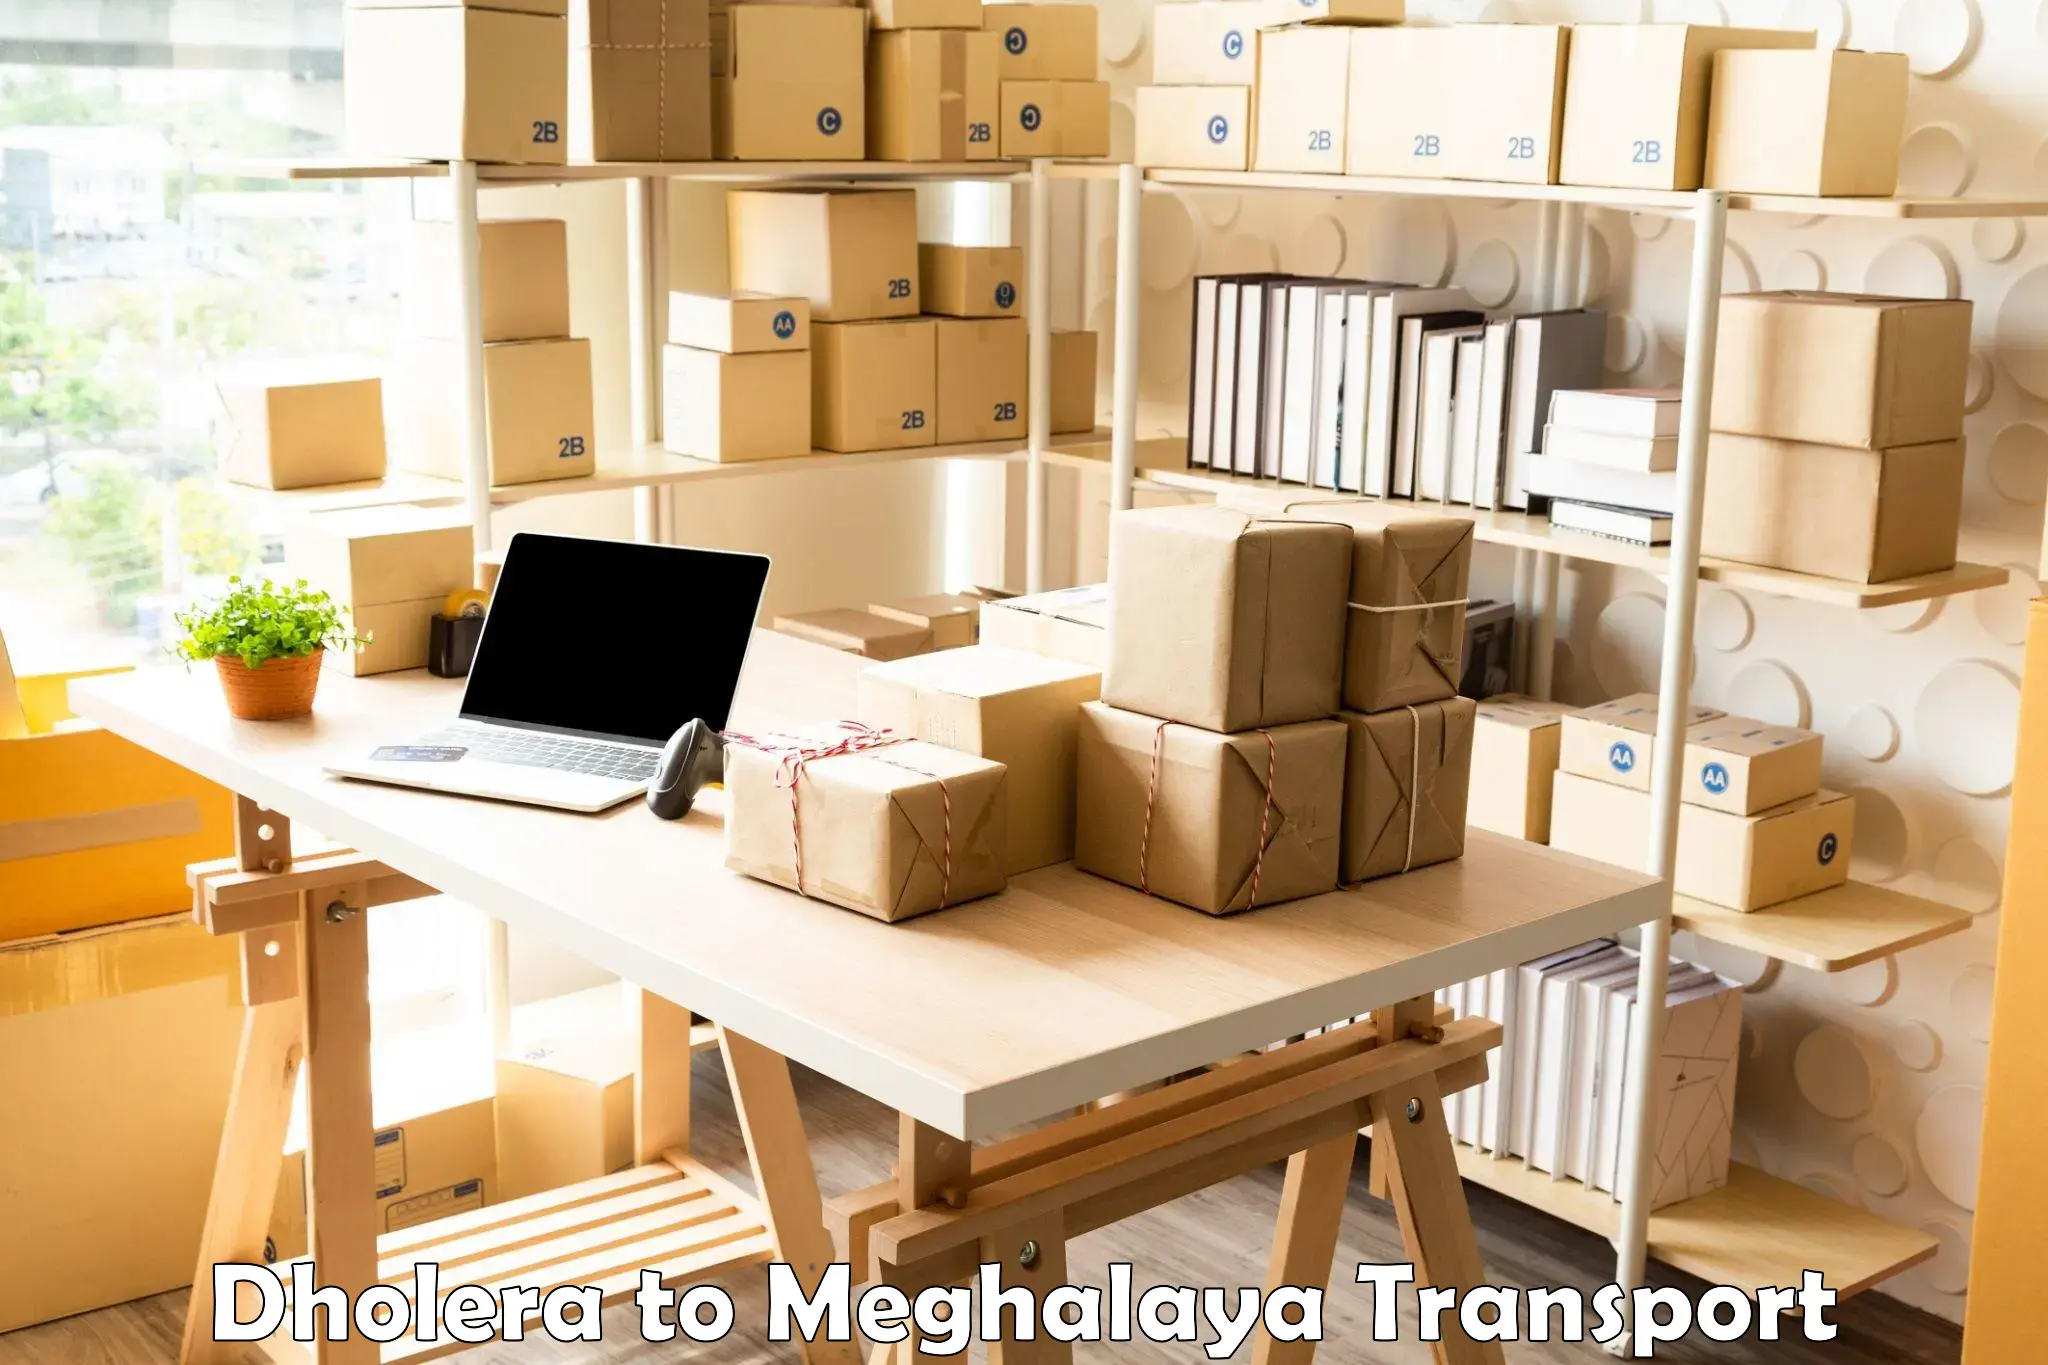 Lorry transport service Dholera to Meghalaya